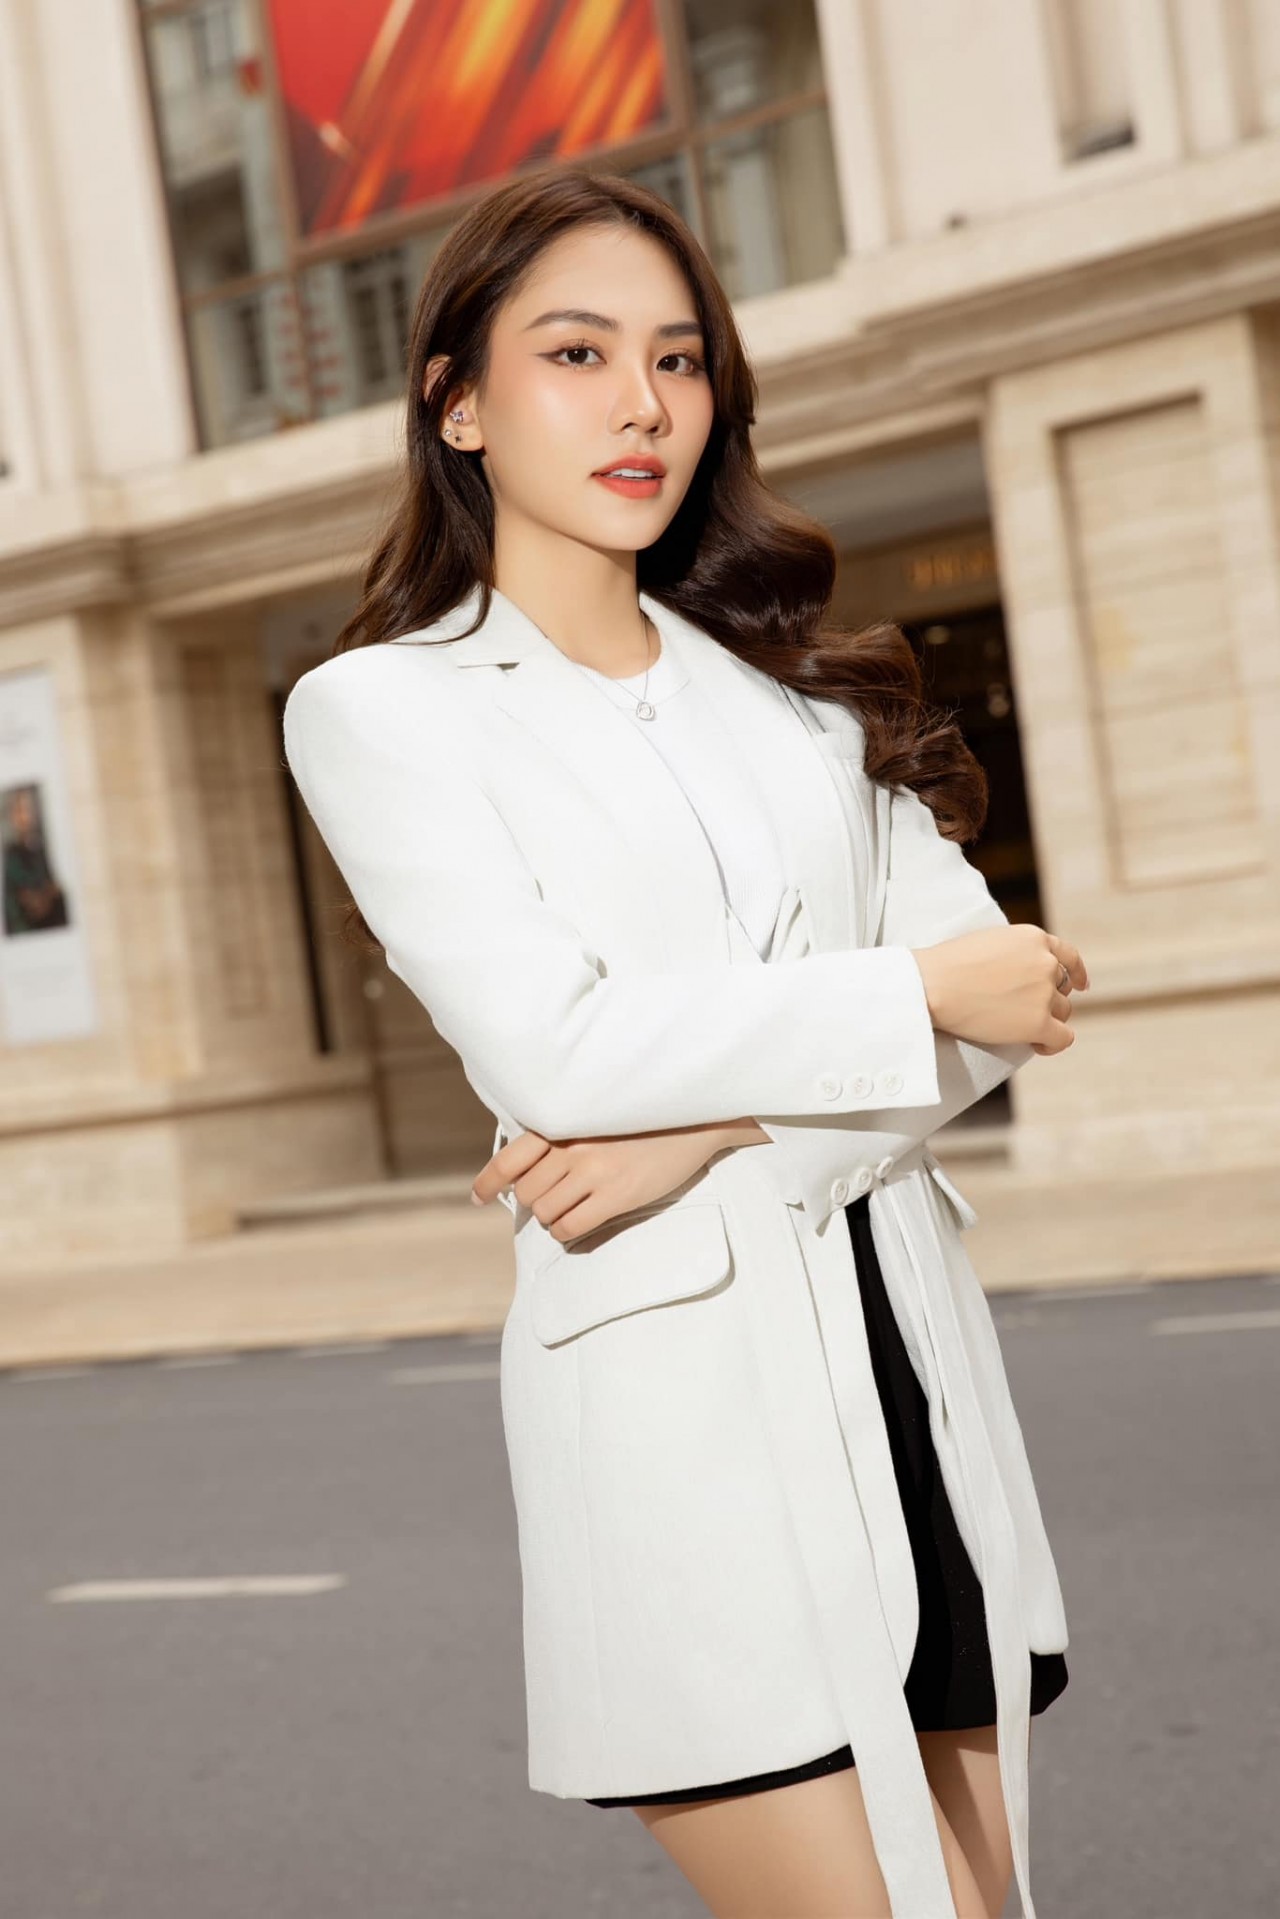 Hoa hậu Huỳnh Nguyễn Mai Phương